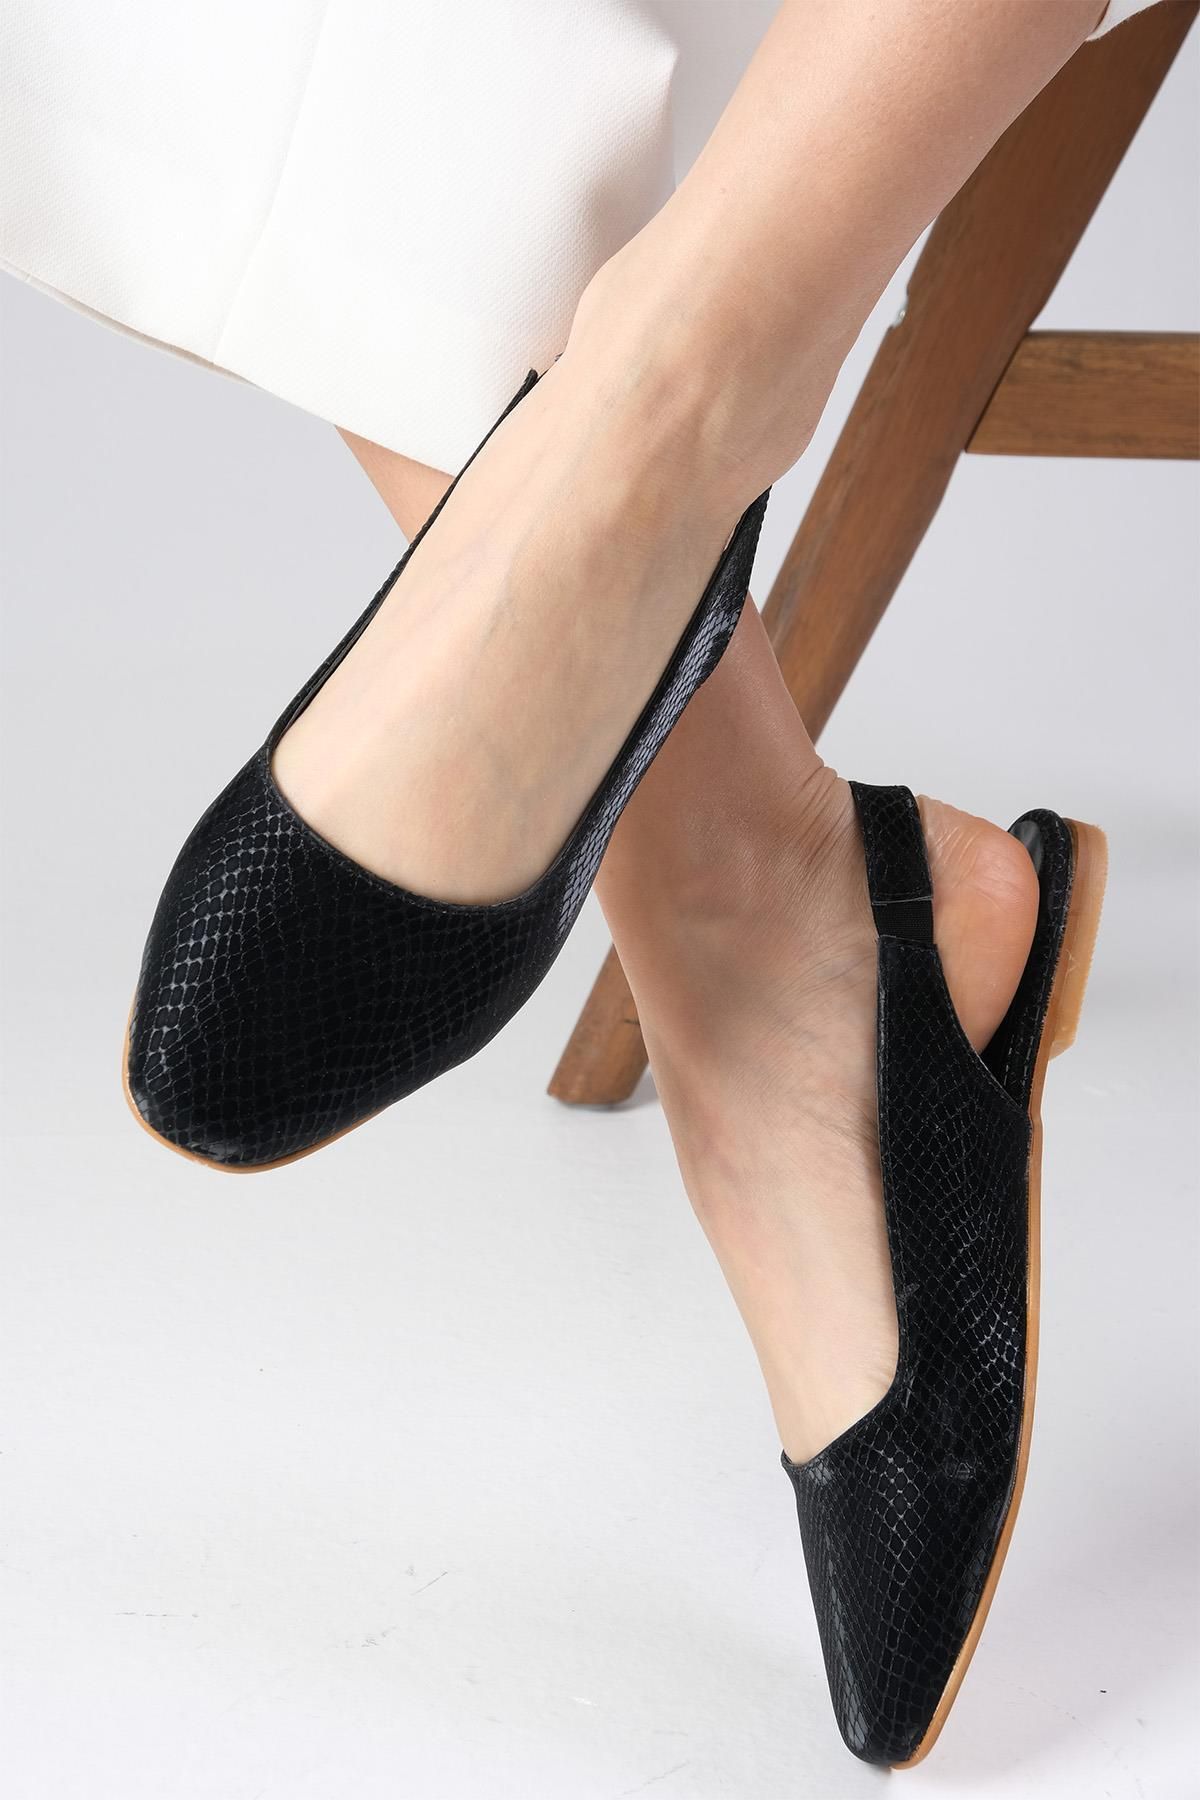 Mio Gusto Ally Metalik Siyah Renk Yılan Derisi Desenli Küt Burunlu Arkası Açık Kadın Babet Ayakkabı